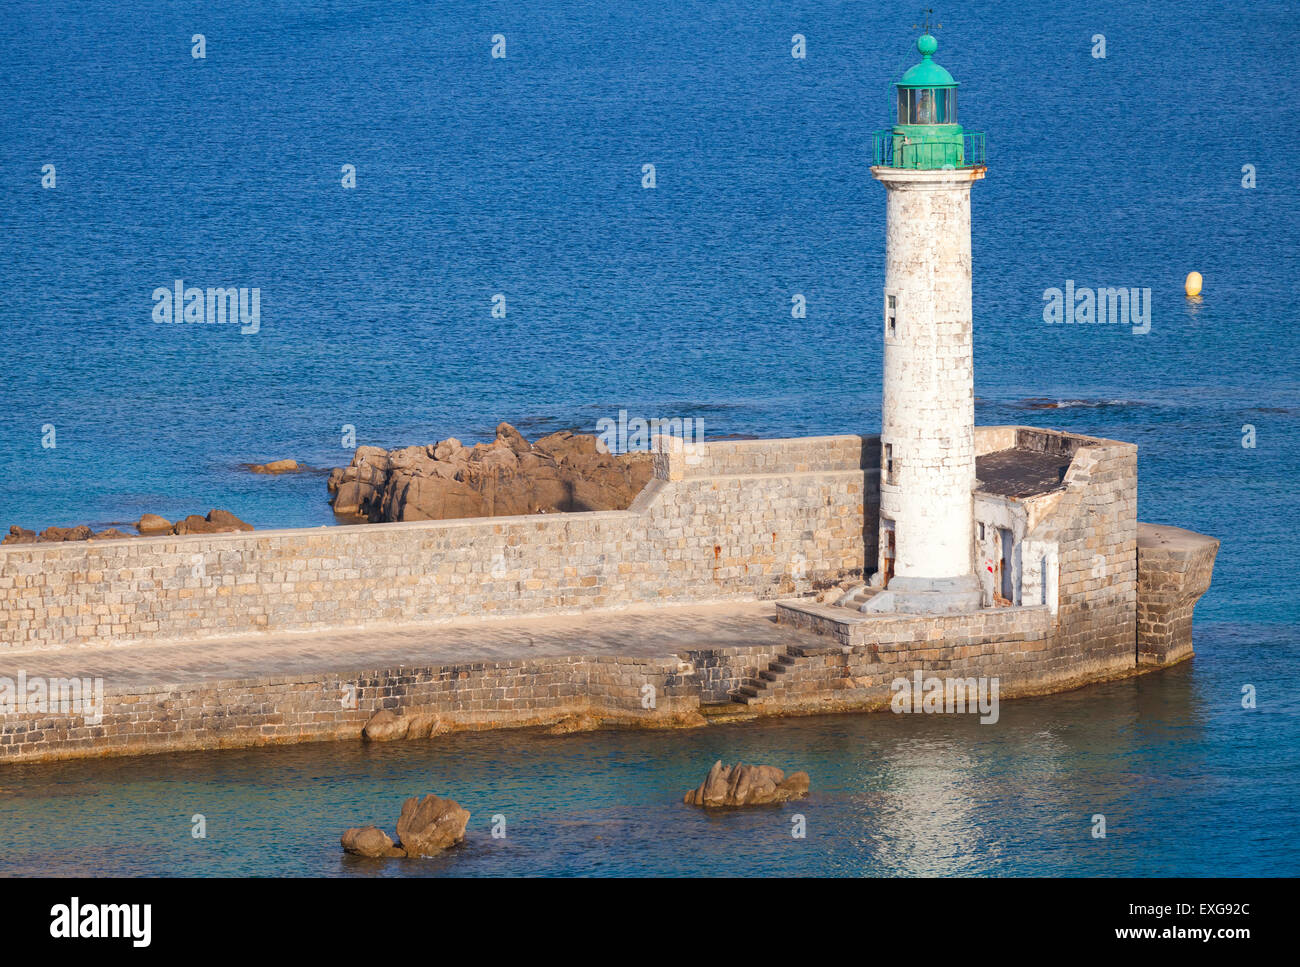 Weißen Leuchtturm mit grüne Spitze. Eingang zum Hafen von Propriano, Korsika, Frankreich Stockfoto